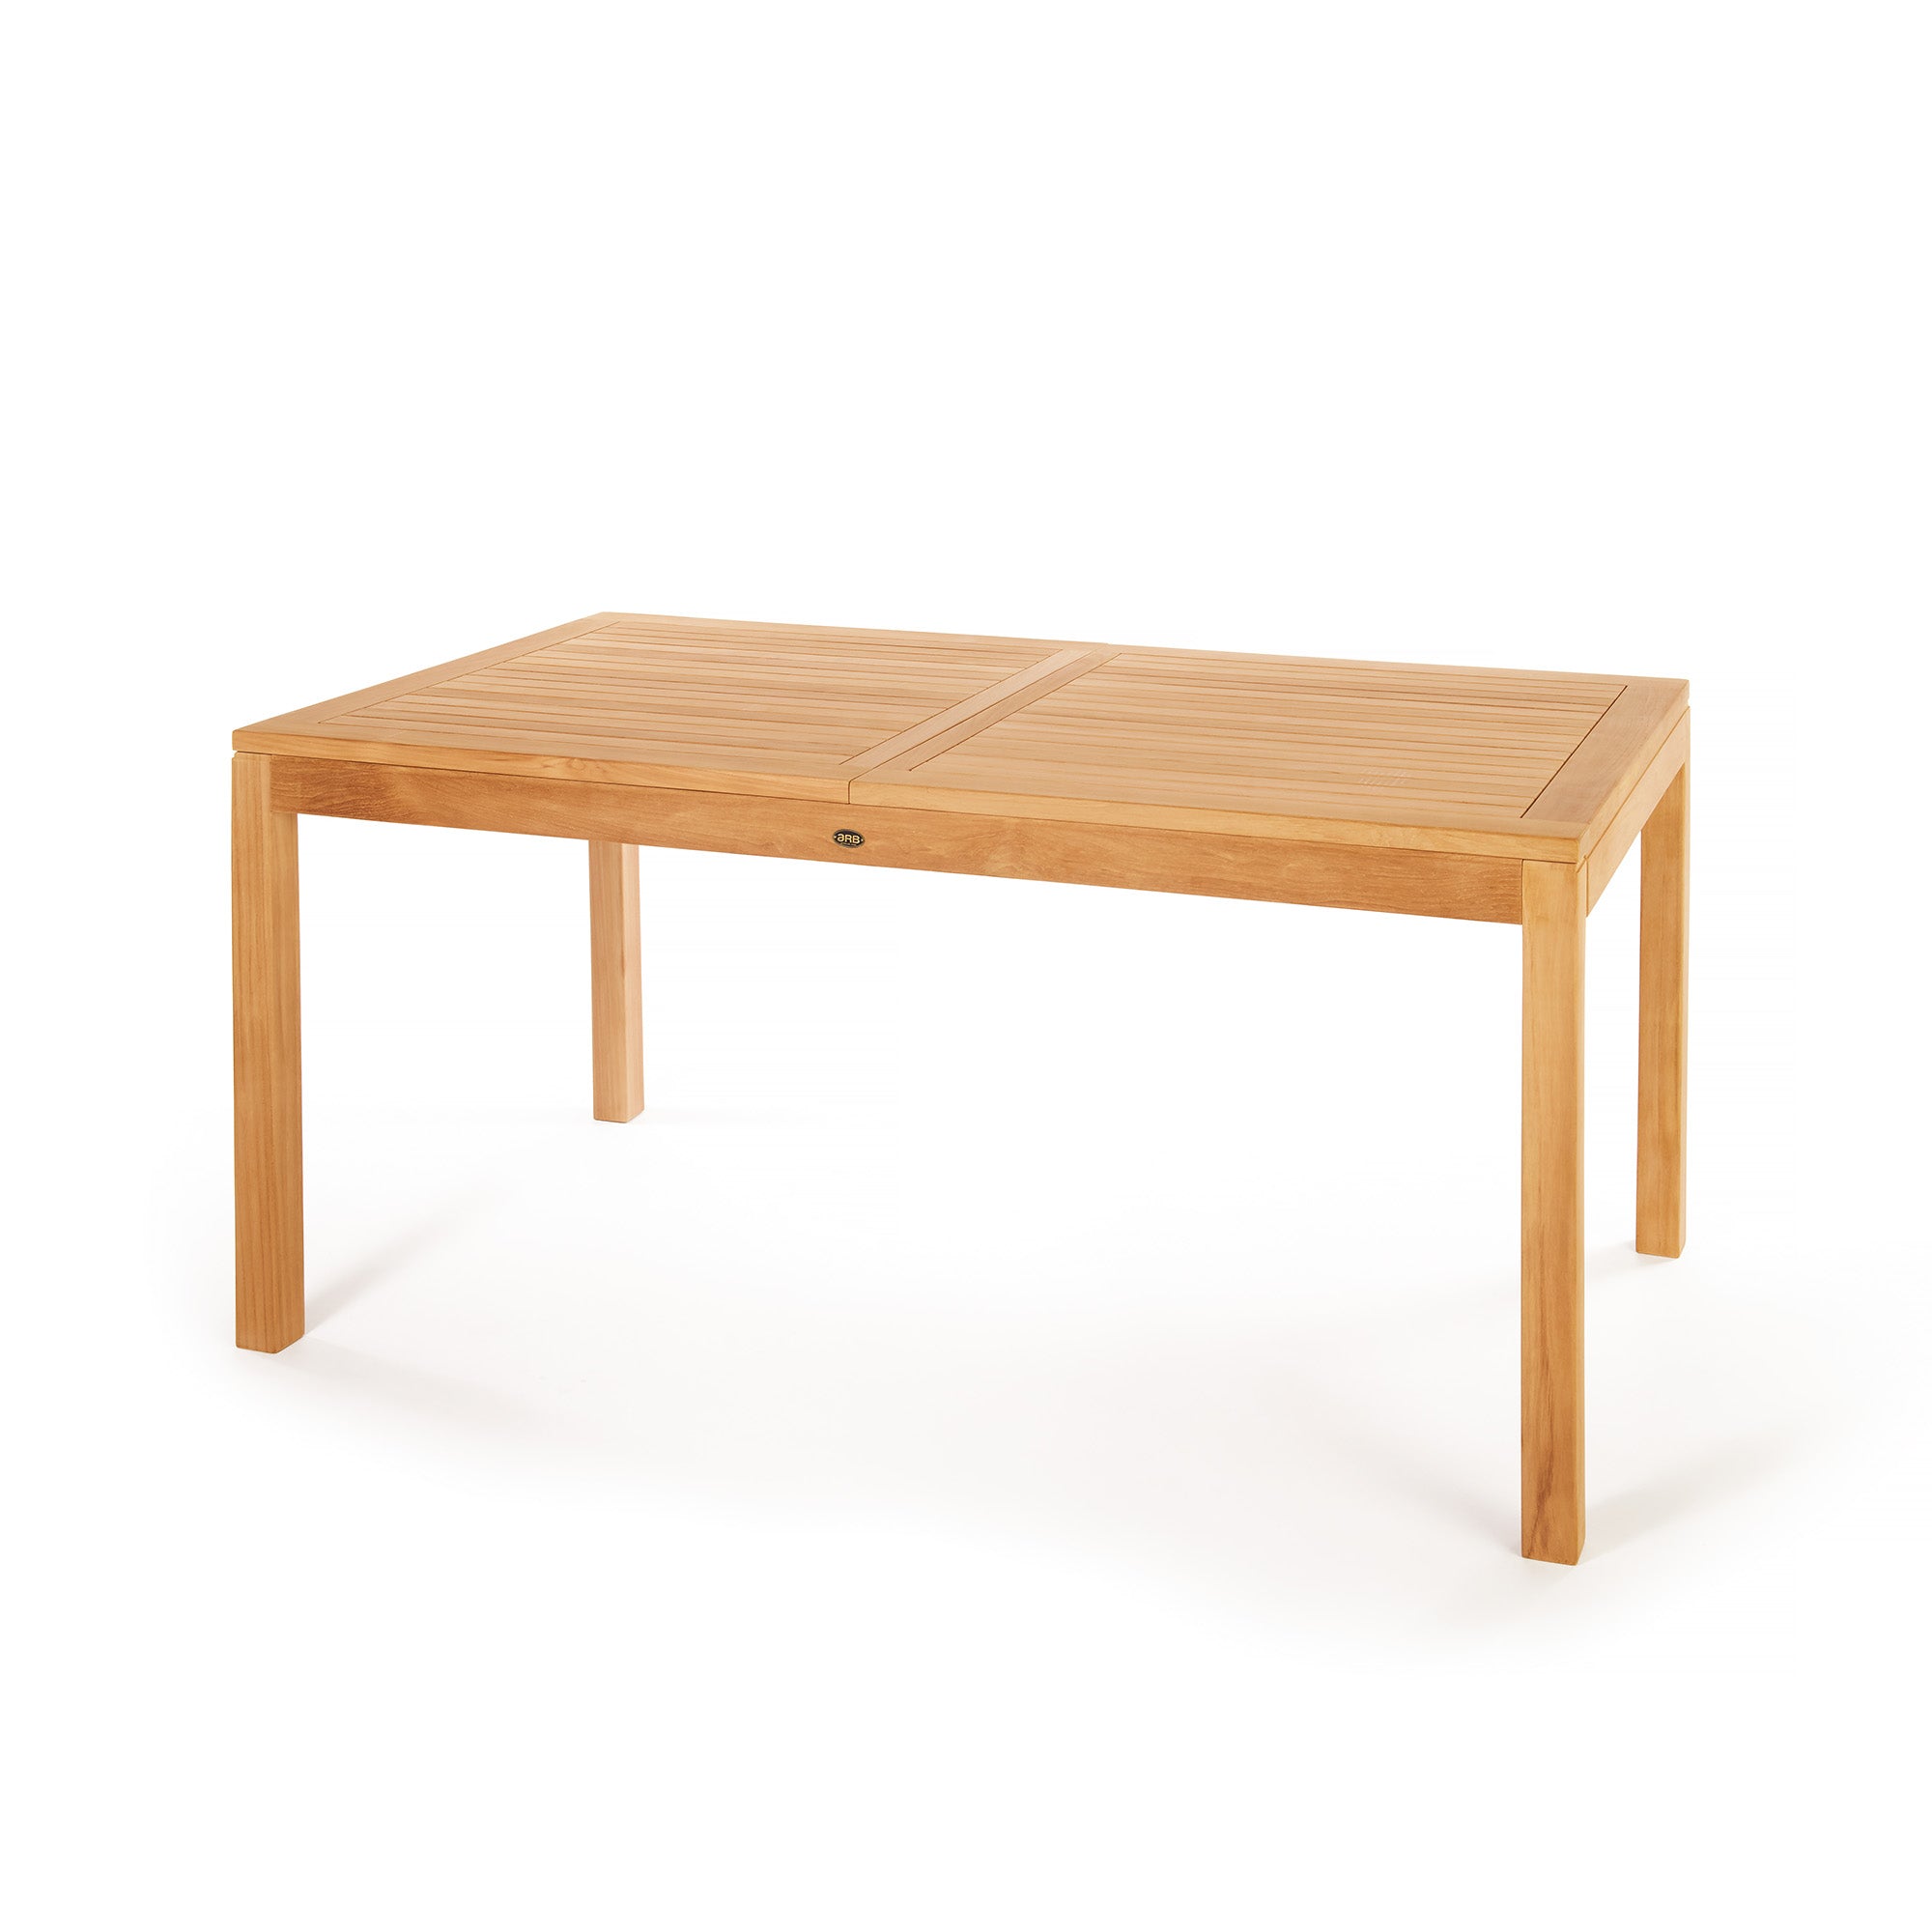 Table+en+teck++Foster+avec+extension+rectangulaire+165/215+x+90+cm+(65/52+x+36+po)